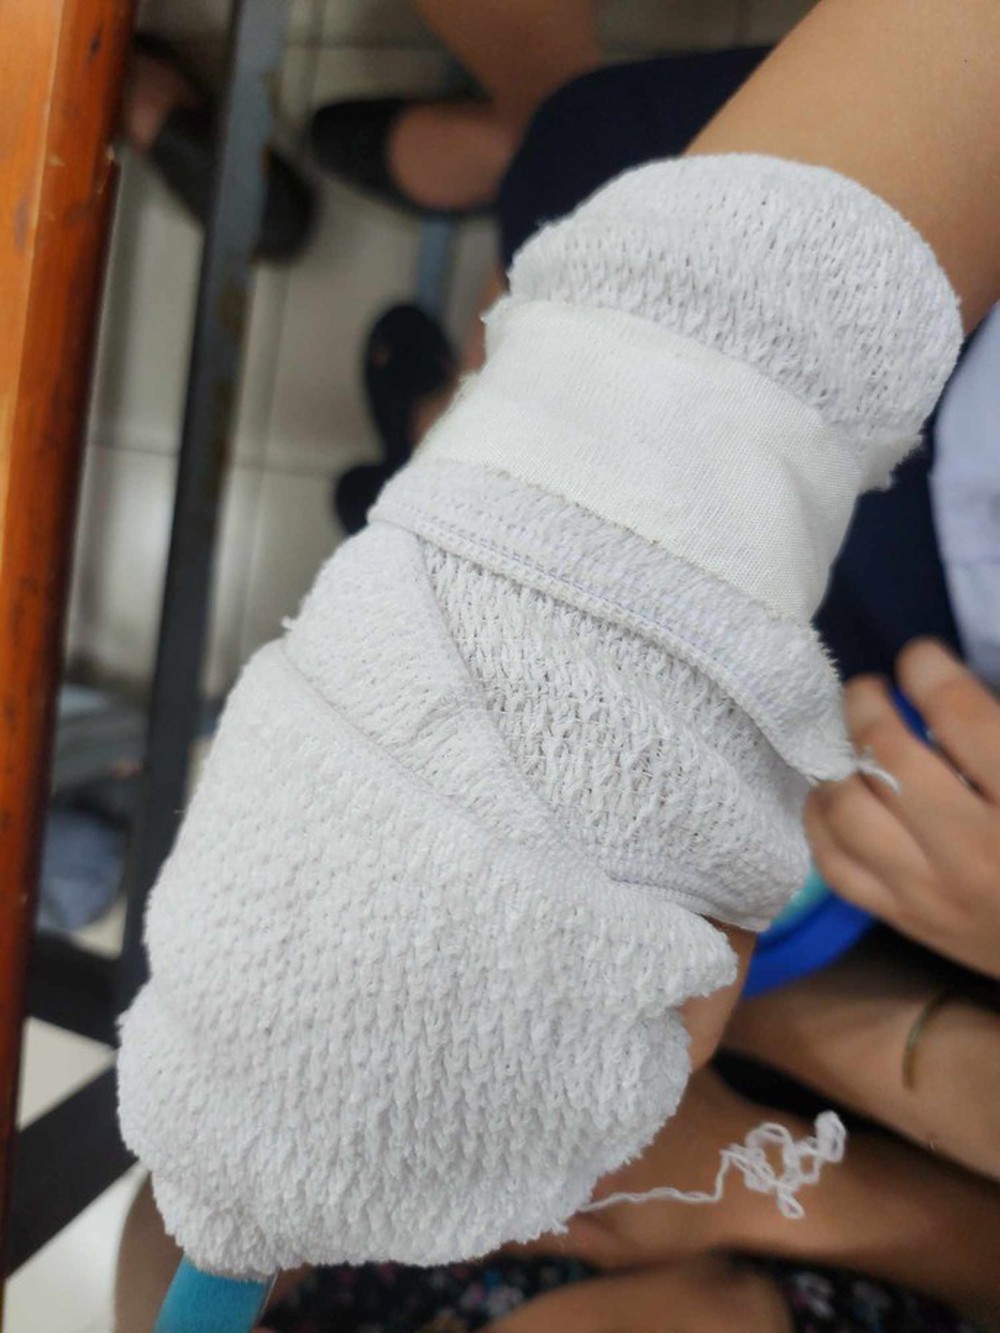 TP HCM: Phụ huynh tố giáo viên đánh gãy xương ngón tay học sinh - Ảnh 1.